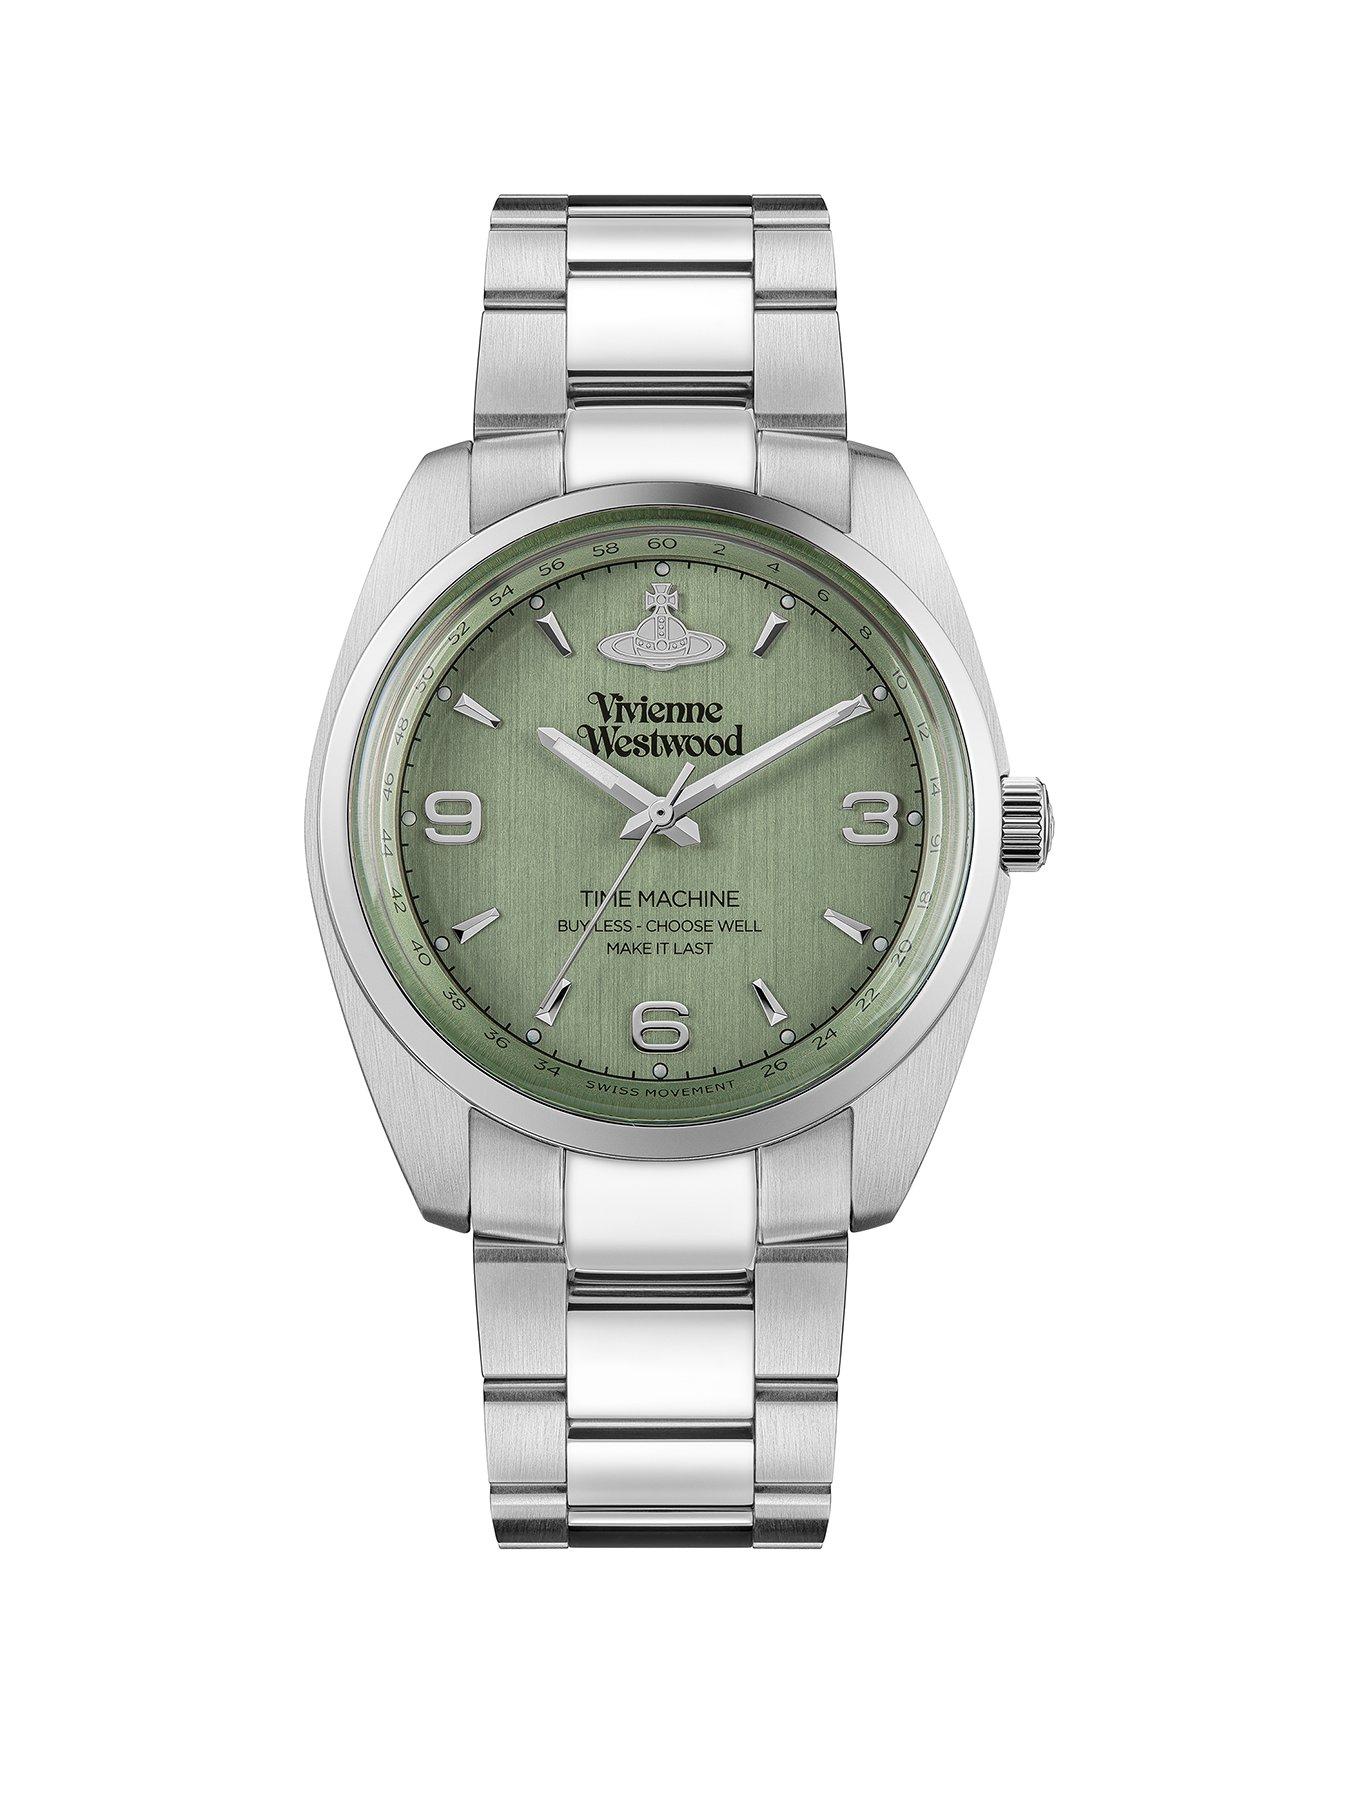 Vivienne Westwood Pennington Unisex Quartz Watch with Green Dial